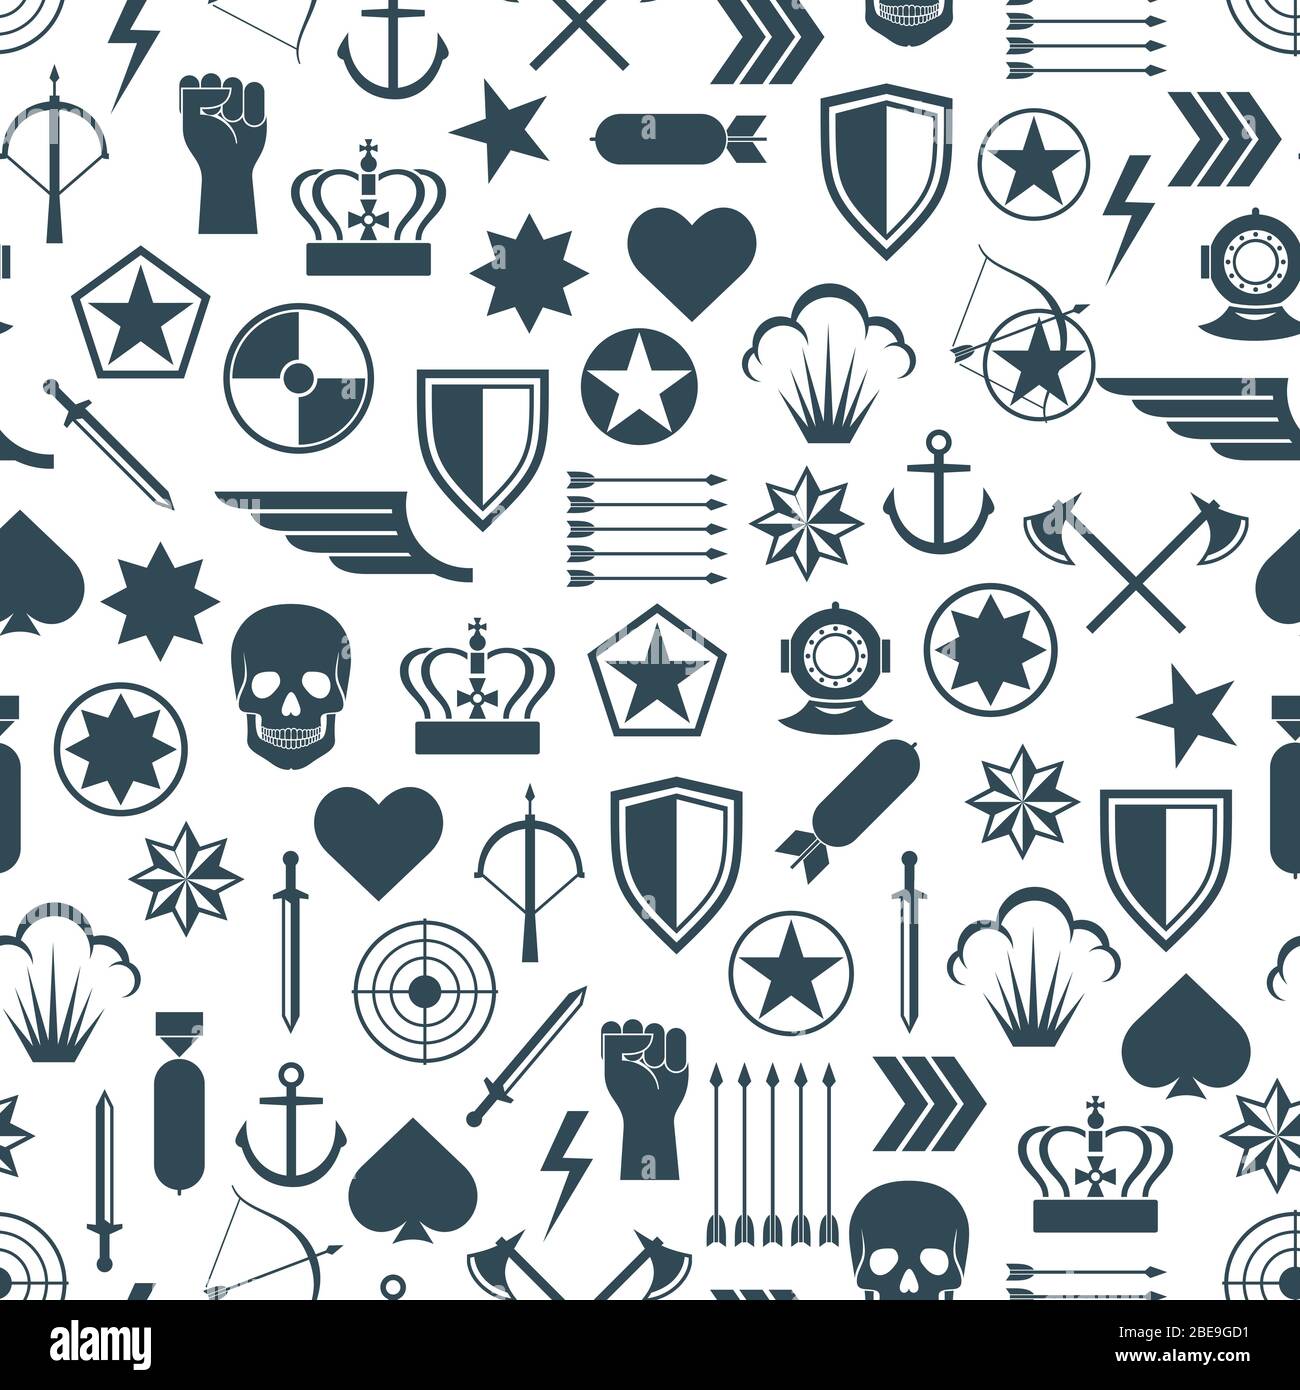 Militär nahtloses Muster mit flachen Armee Elemente. Militärischer Hintergrund, Vektorgrafik Stock Vektor